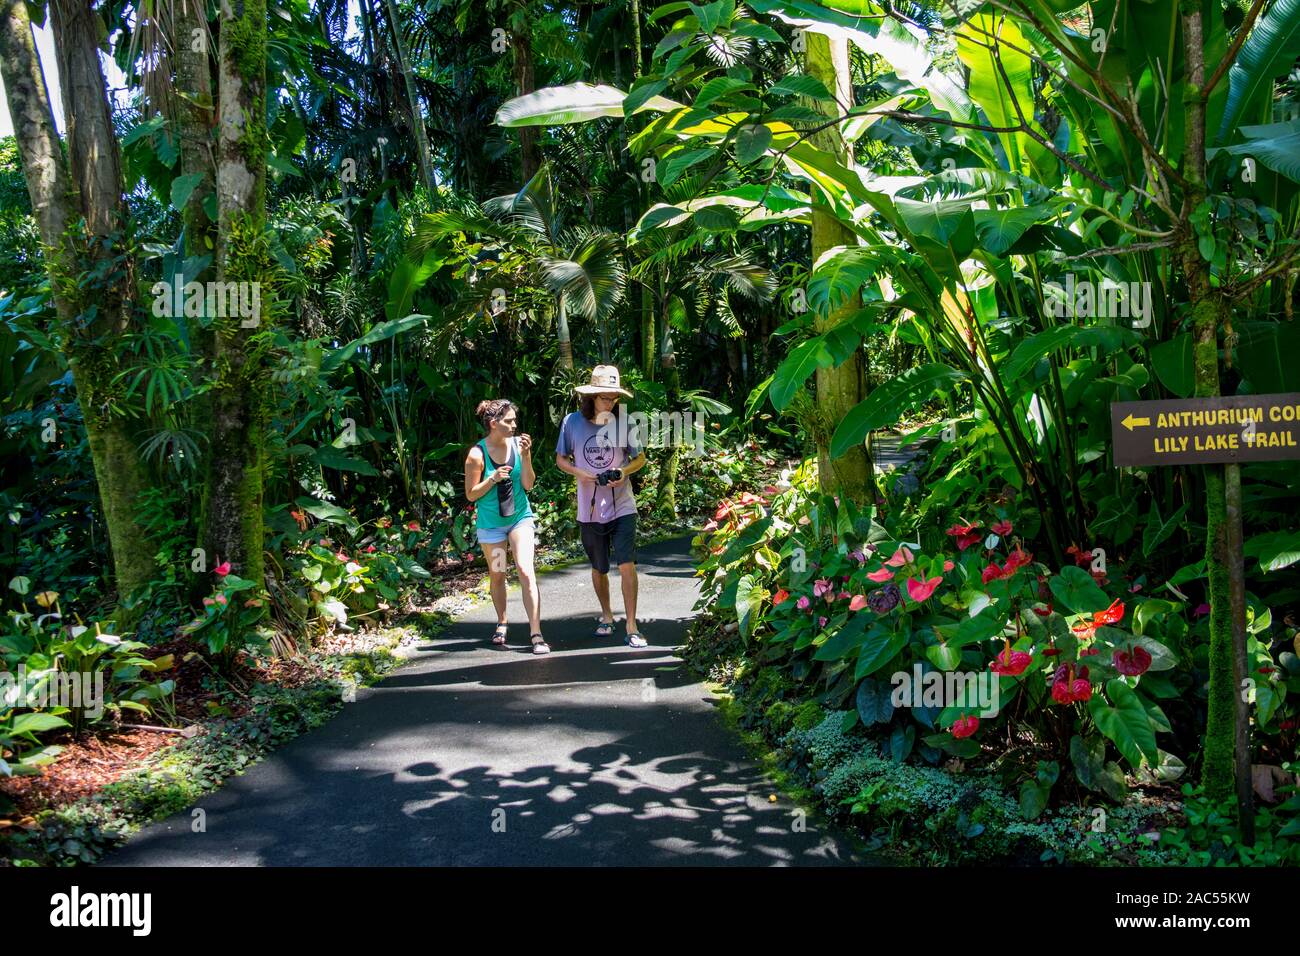 Tourists walk through the Anthurium Corner at Hawaii Tropical Botanical Garden, Papa'ikou, Big Island of Hawaiʻi. Stock Photo